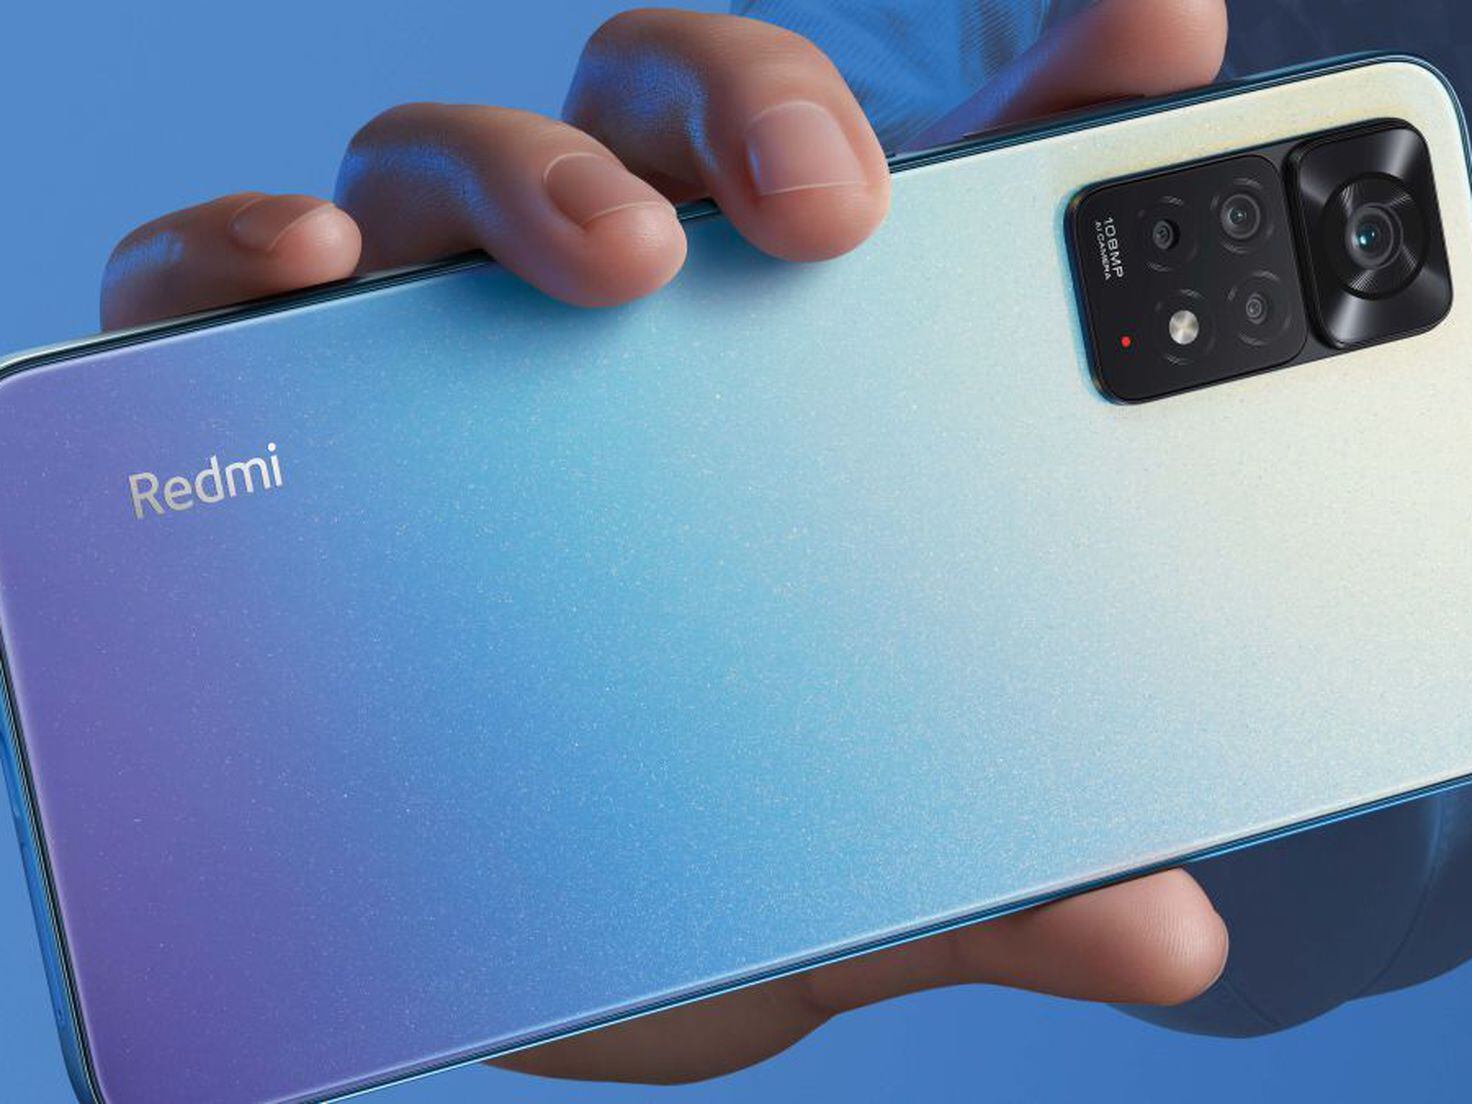 Un leaker revela el nuevo Xiaomi Redmi 12 en tres colores